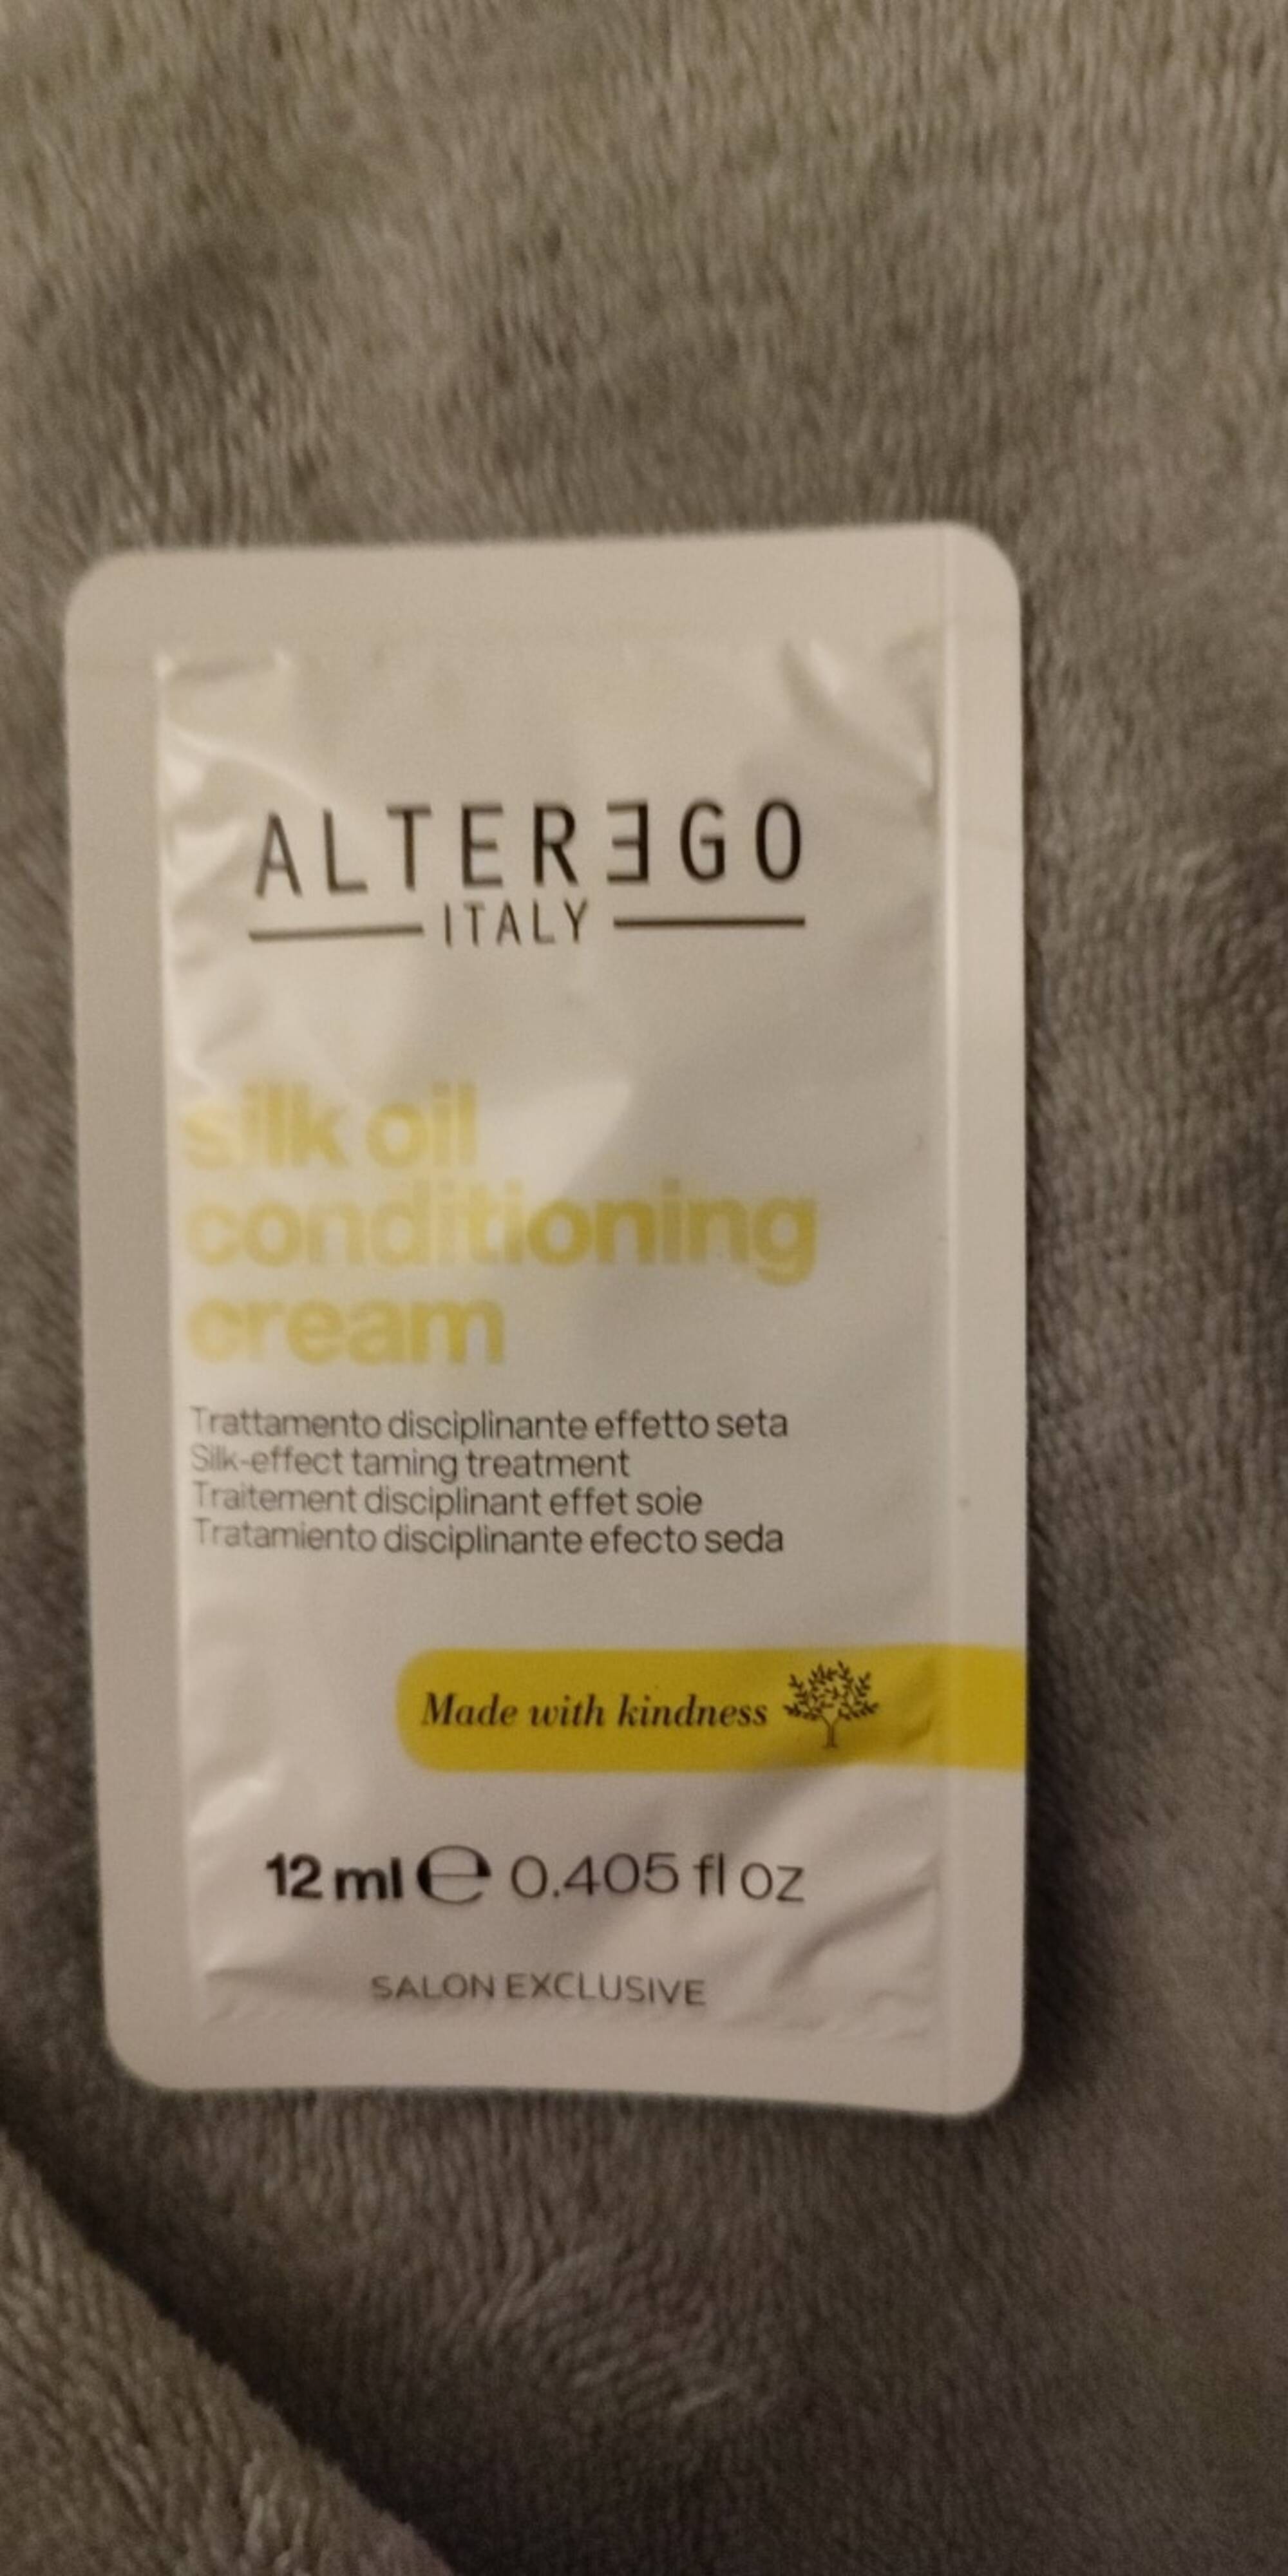 ALTER EGO - Silk oil conditioning cream